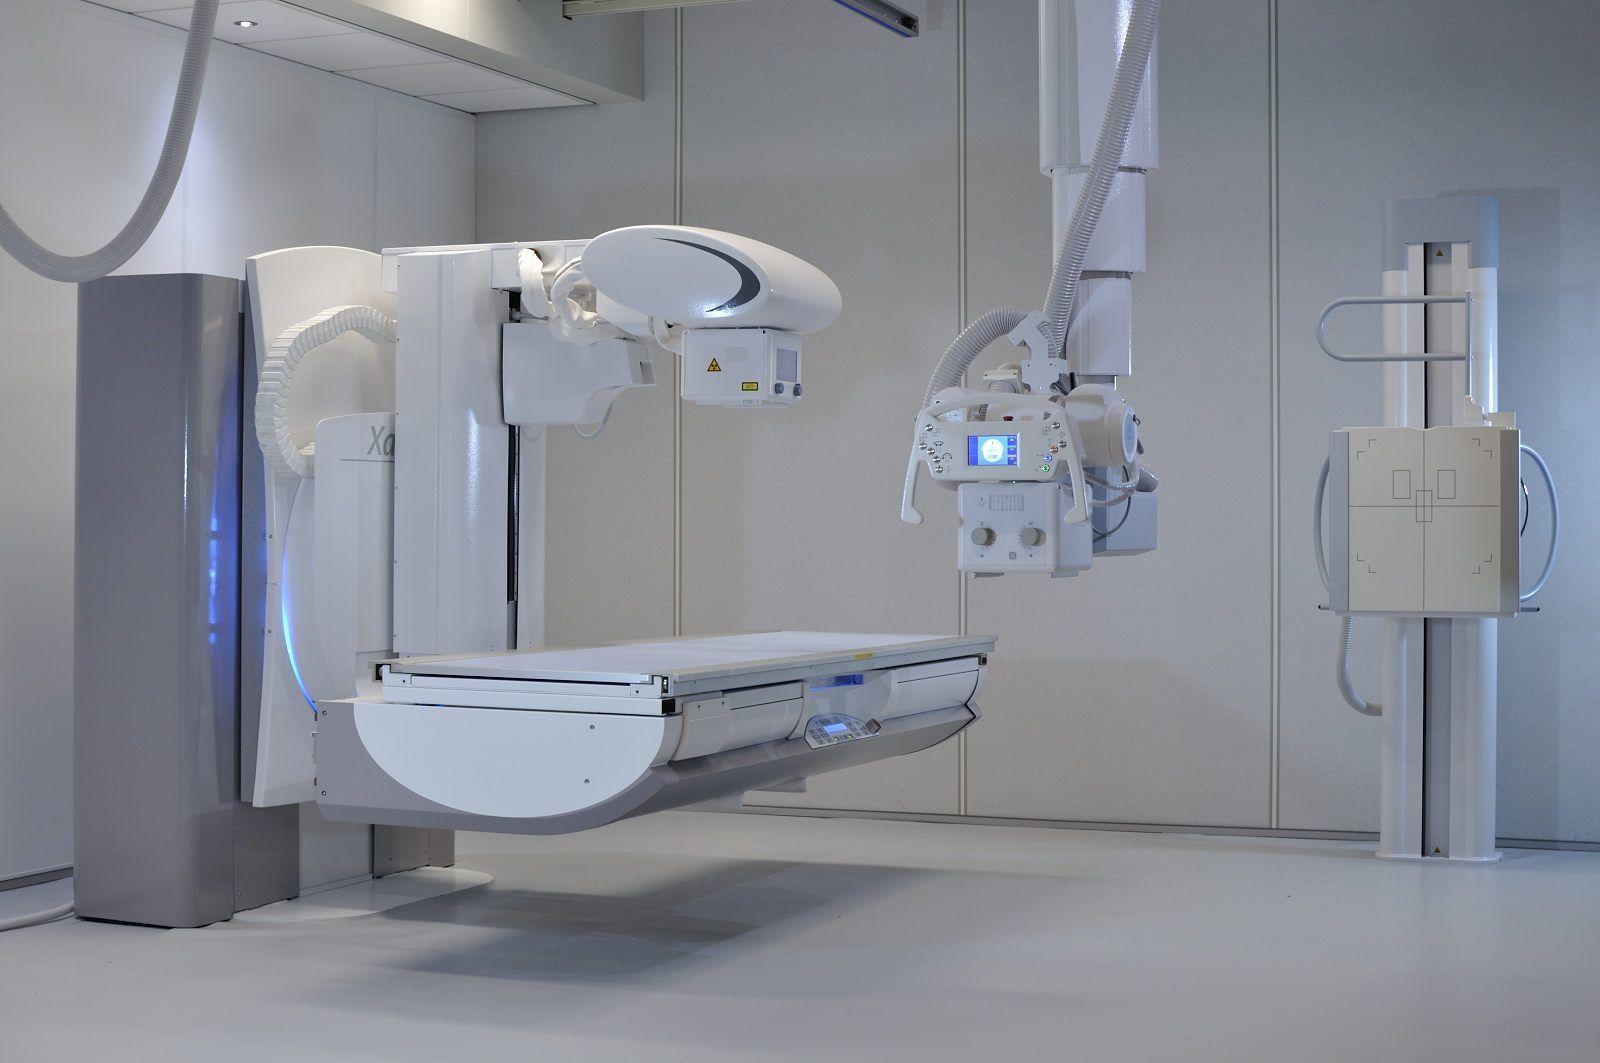 По нацпроекту «Здравоохранение» в Новосокольники поступит современный рентгеновский аппарат.